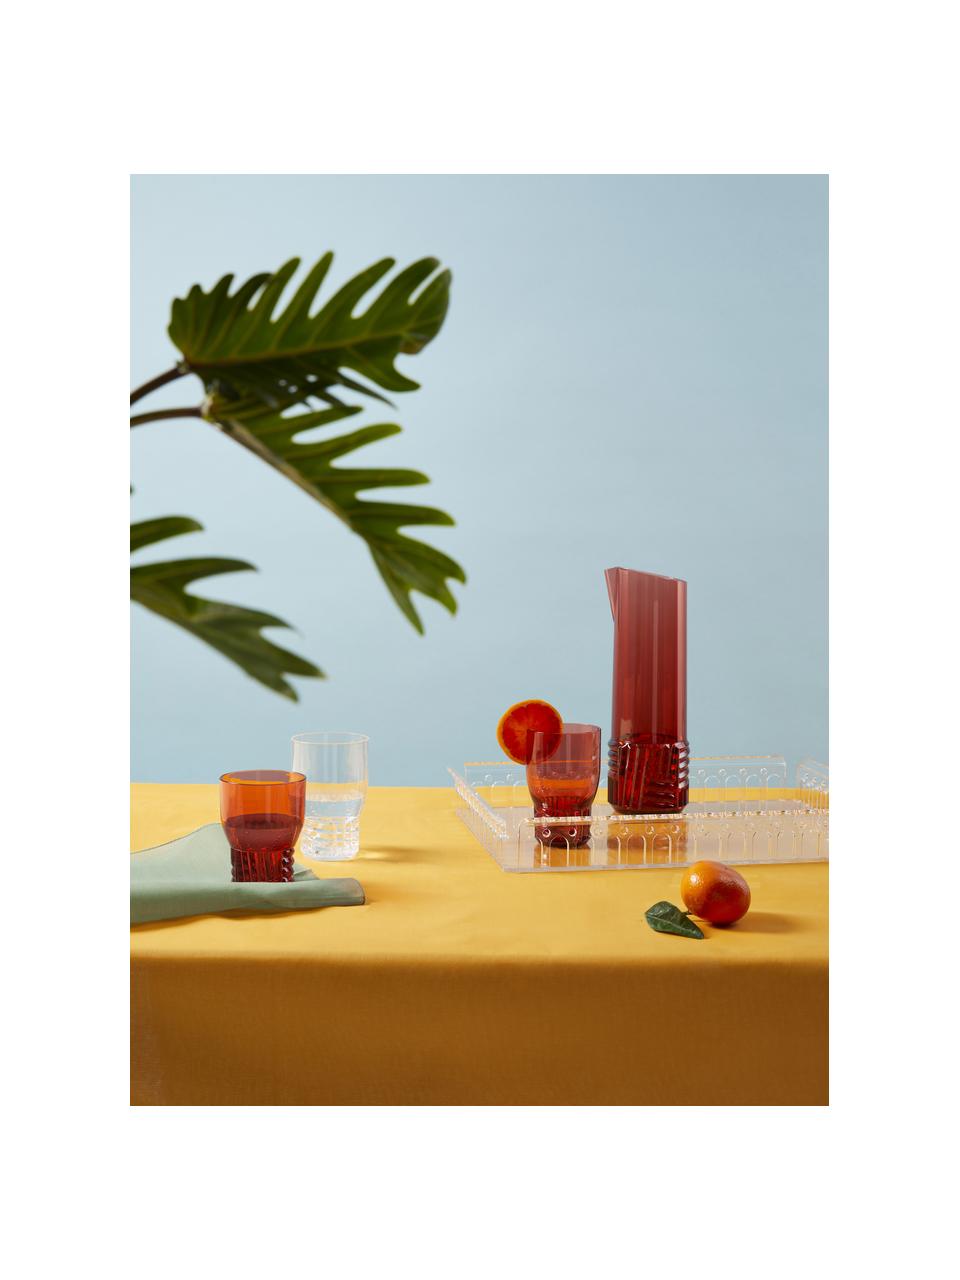 Szklanka do wody Trama, 4 szt., Tworzywo sztuczne, Pomarańczowy, transparentny, Ø 9 x W 13 cm, 460 ml